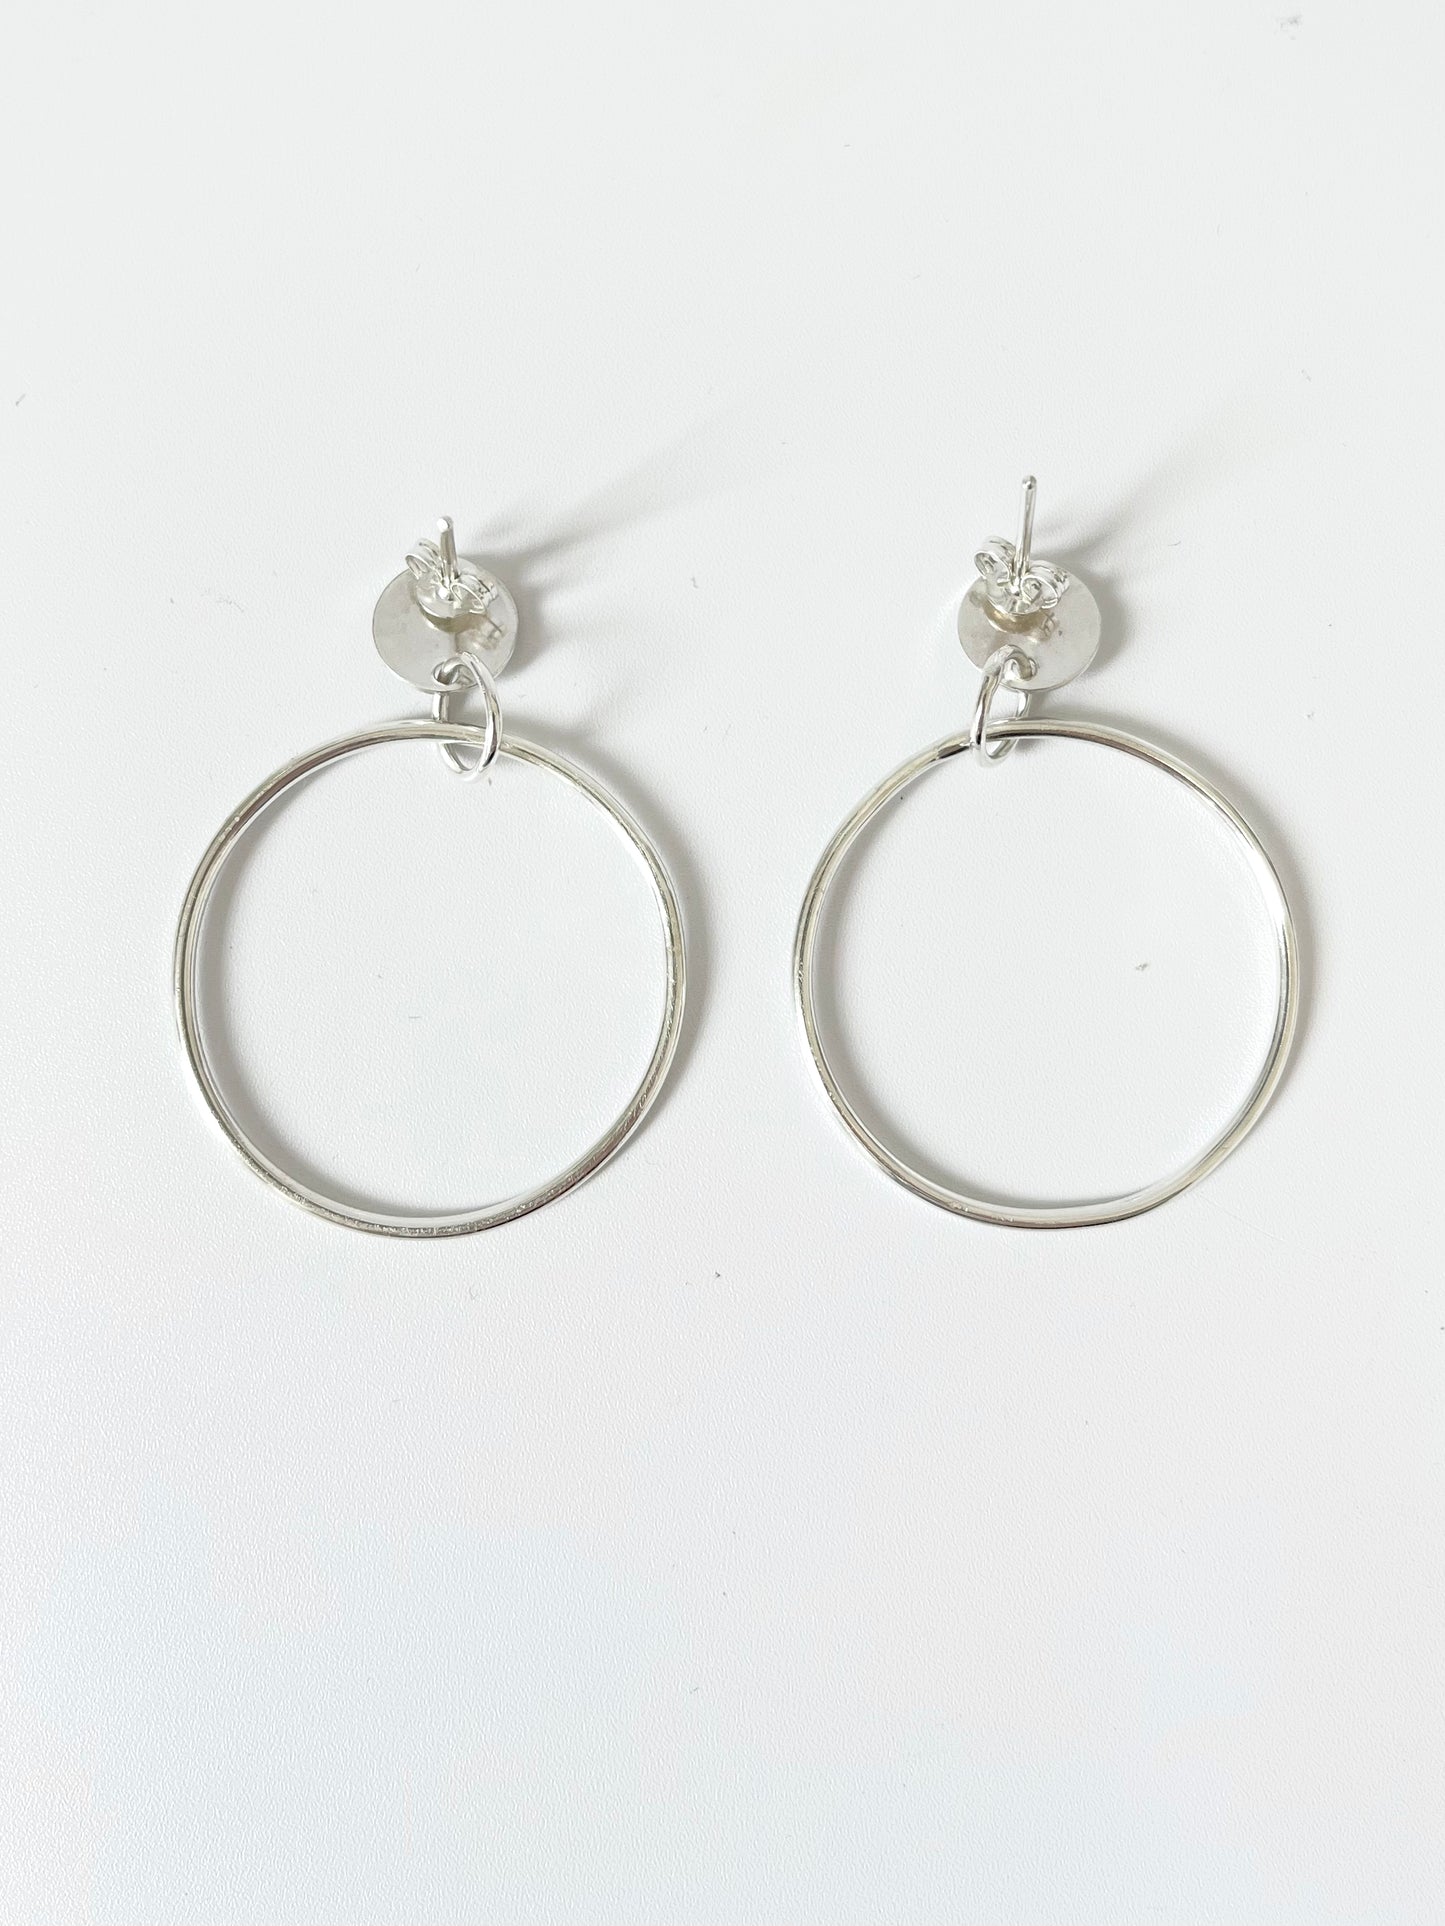 Silver Hoop Earrings with Disc